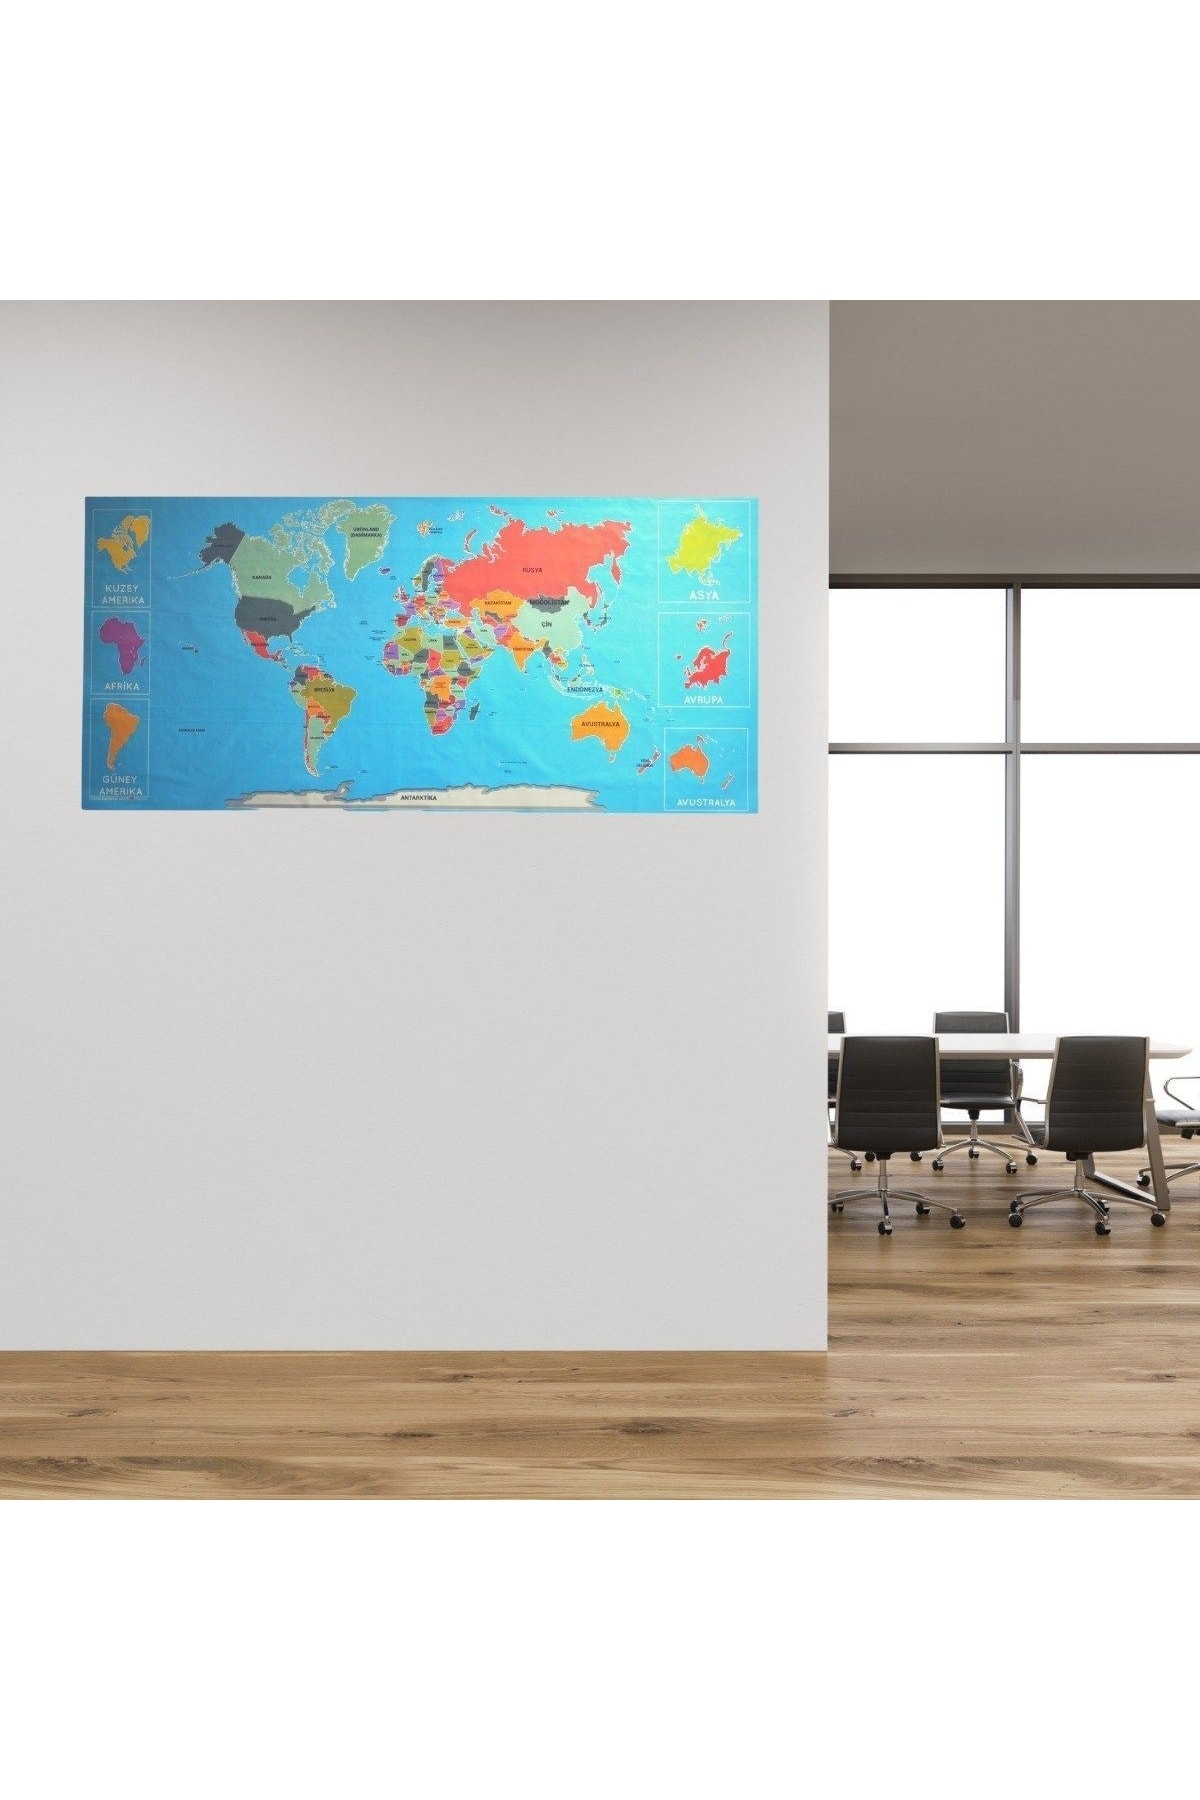 Ürün Gezegeni Renkli atlas Dünya haritası Manyetik Yapıştırıcı Gerekmeyen Duvar Stickerı 118xcm-sihirli Kağıt